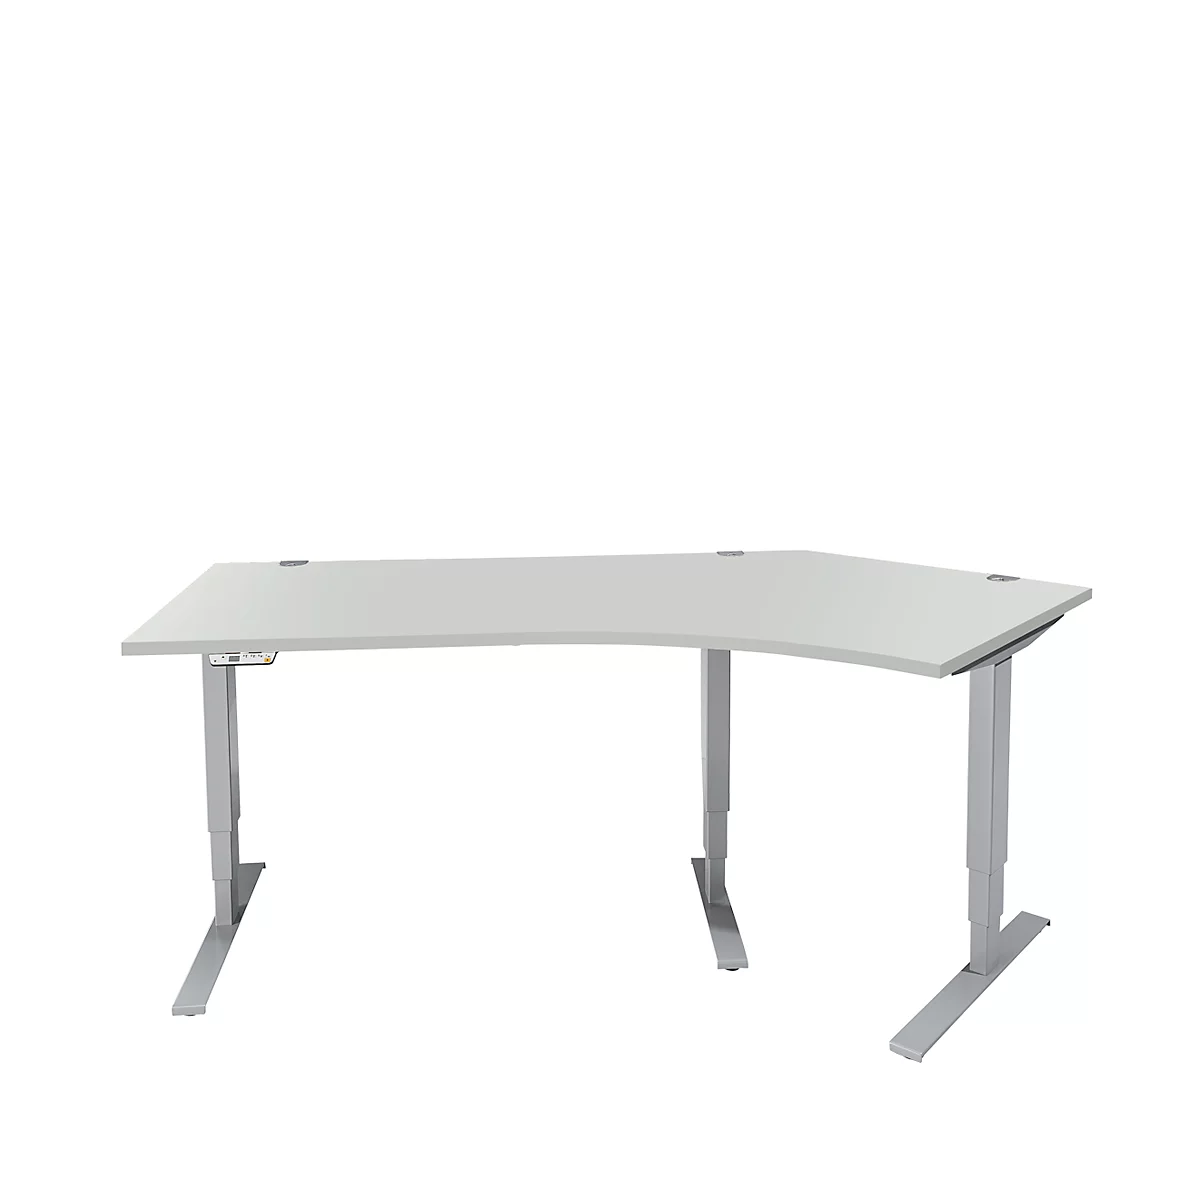 Schäfer Shop Genius AERO FLEX escritorio angular, regulable eléctricamente en altura, ángulo de 135° a la derecha, anchura 2165 mm, aluminio gris claro/blanco + panel de memoria